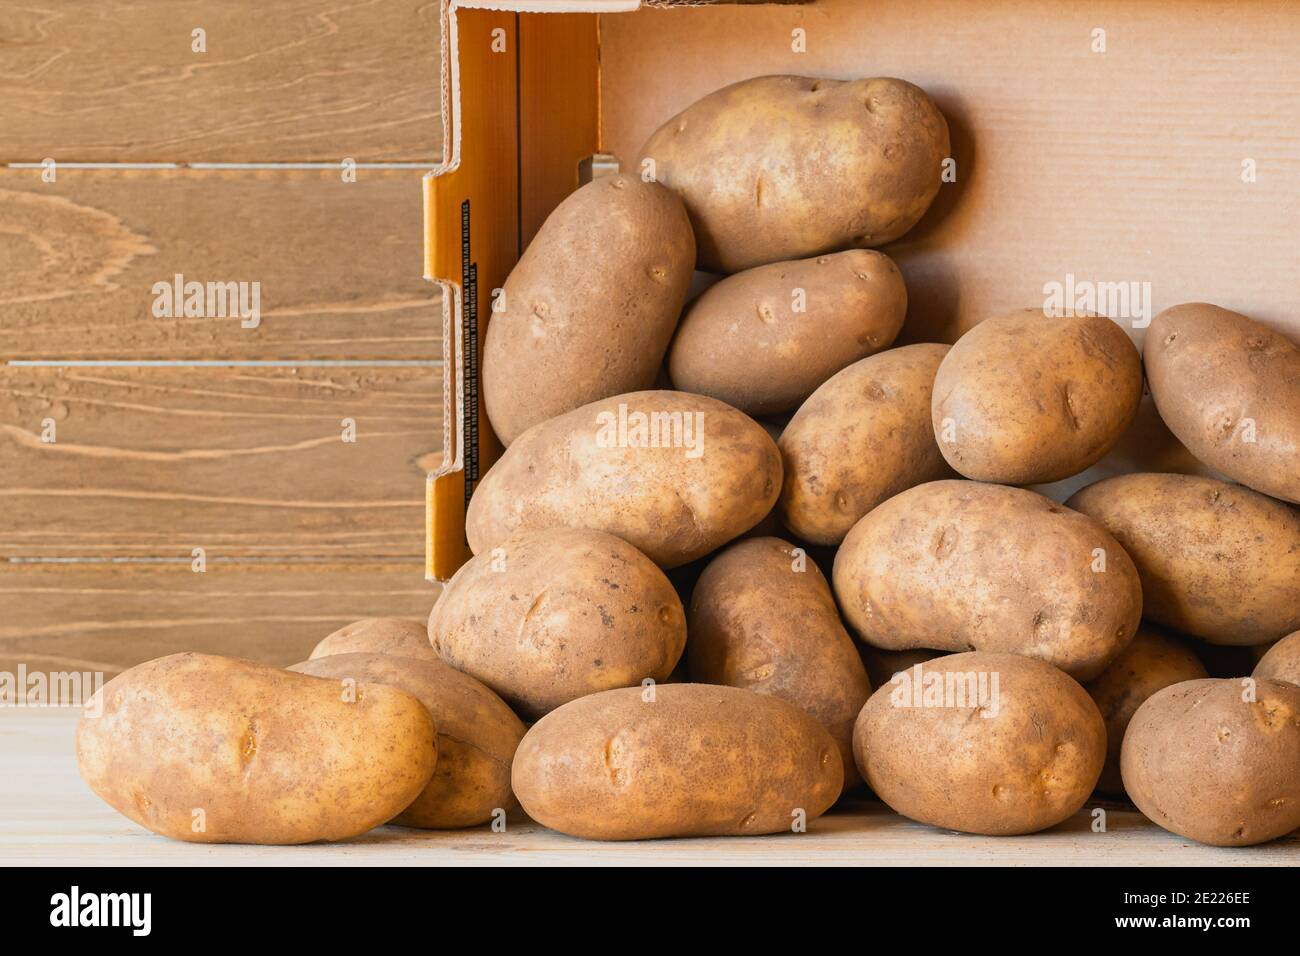 Les pommes de terre de l'Idaho dans une boîte de gros plan sur fond de bois Banque D'Images